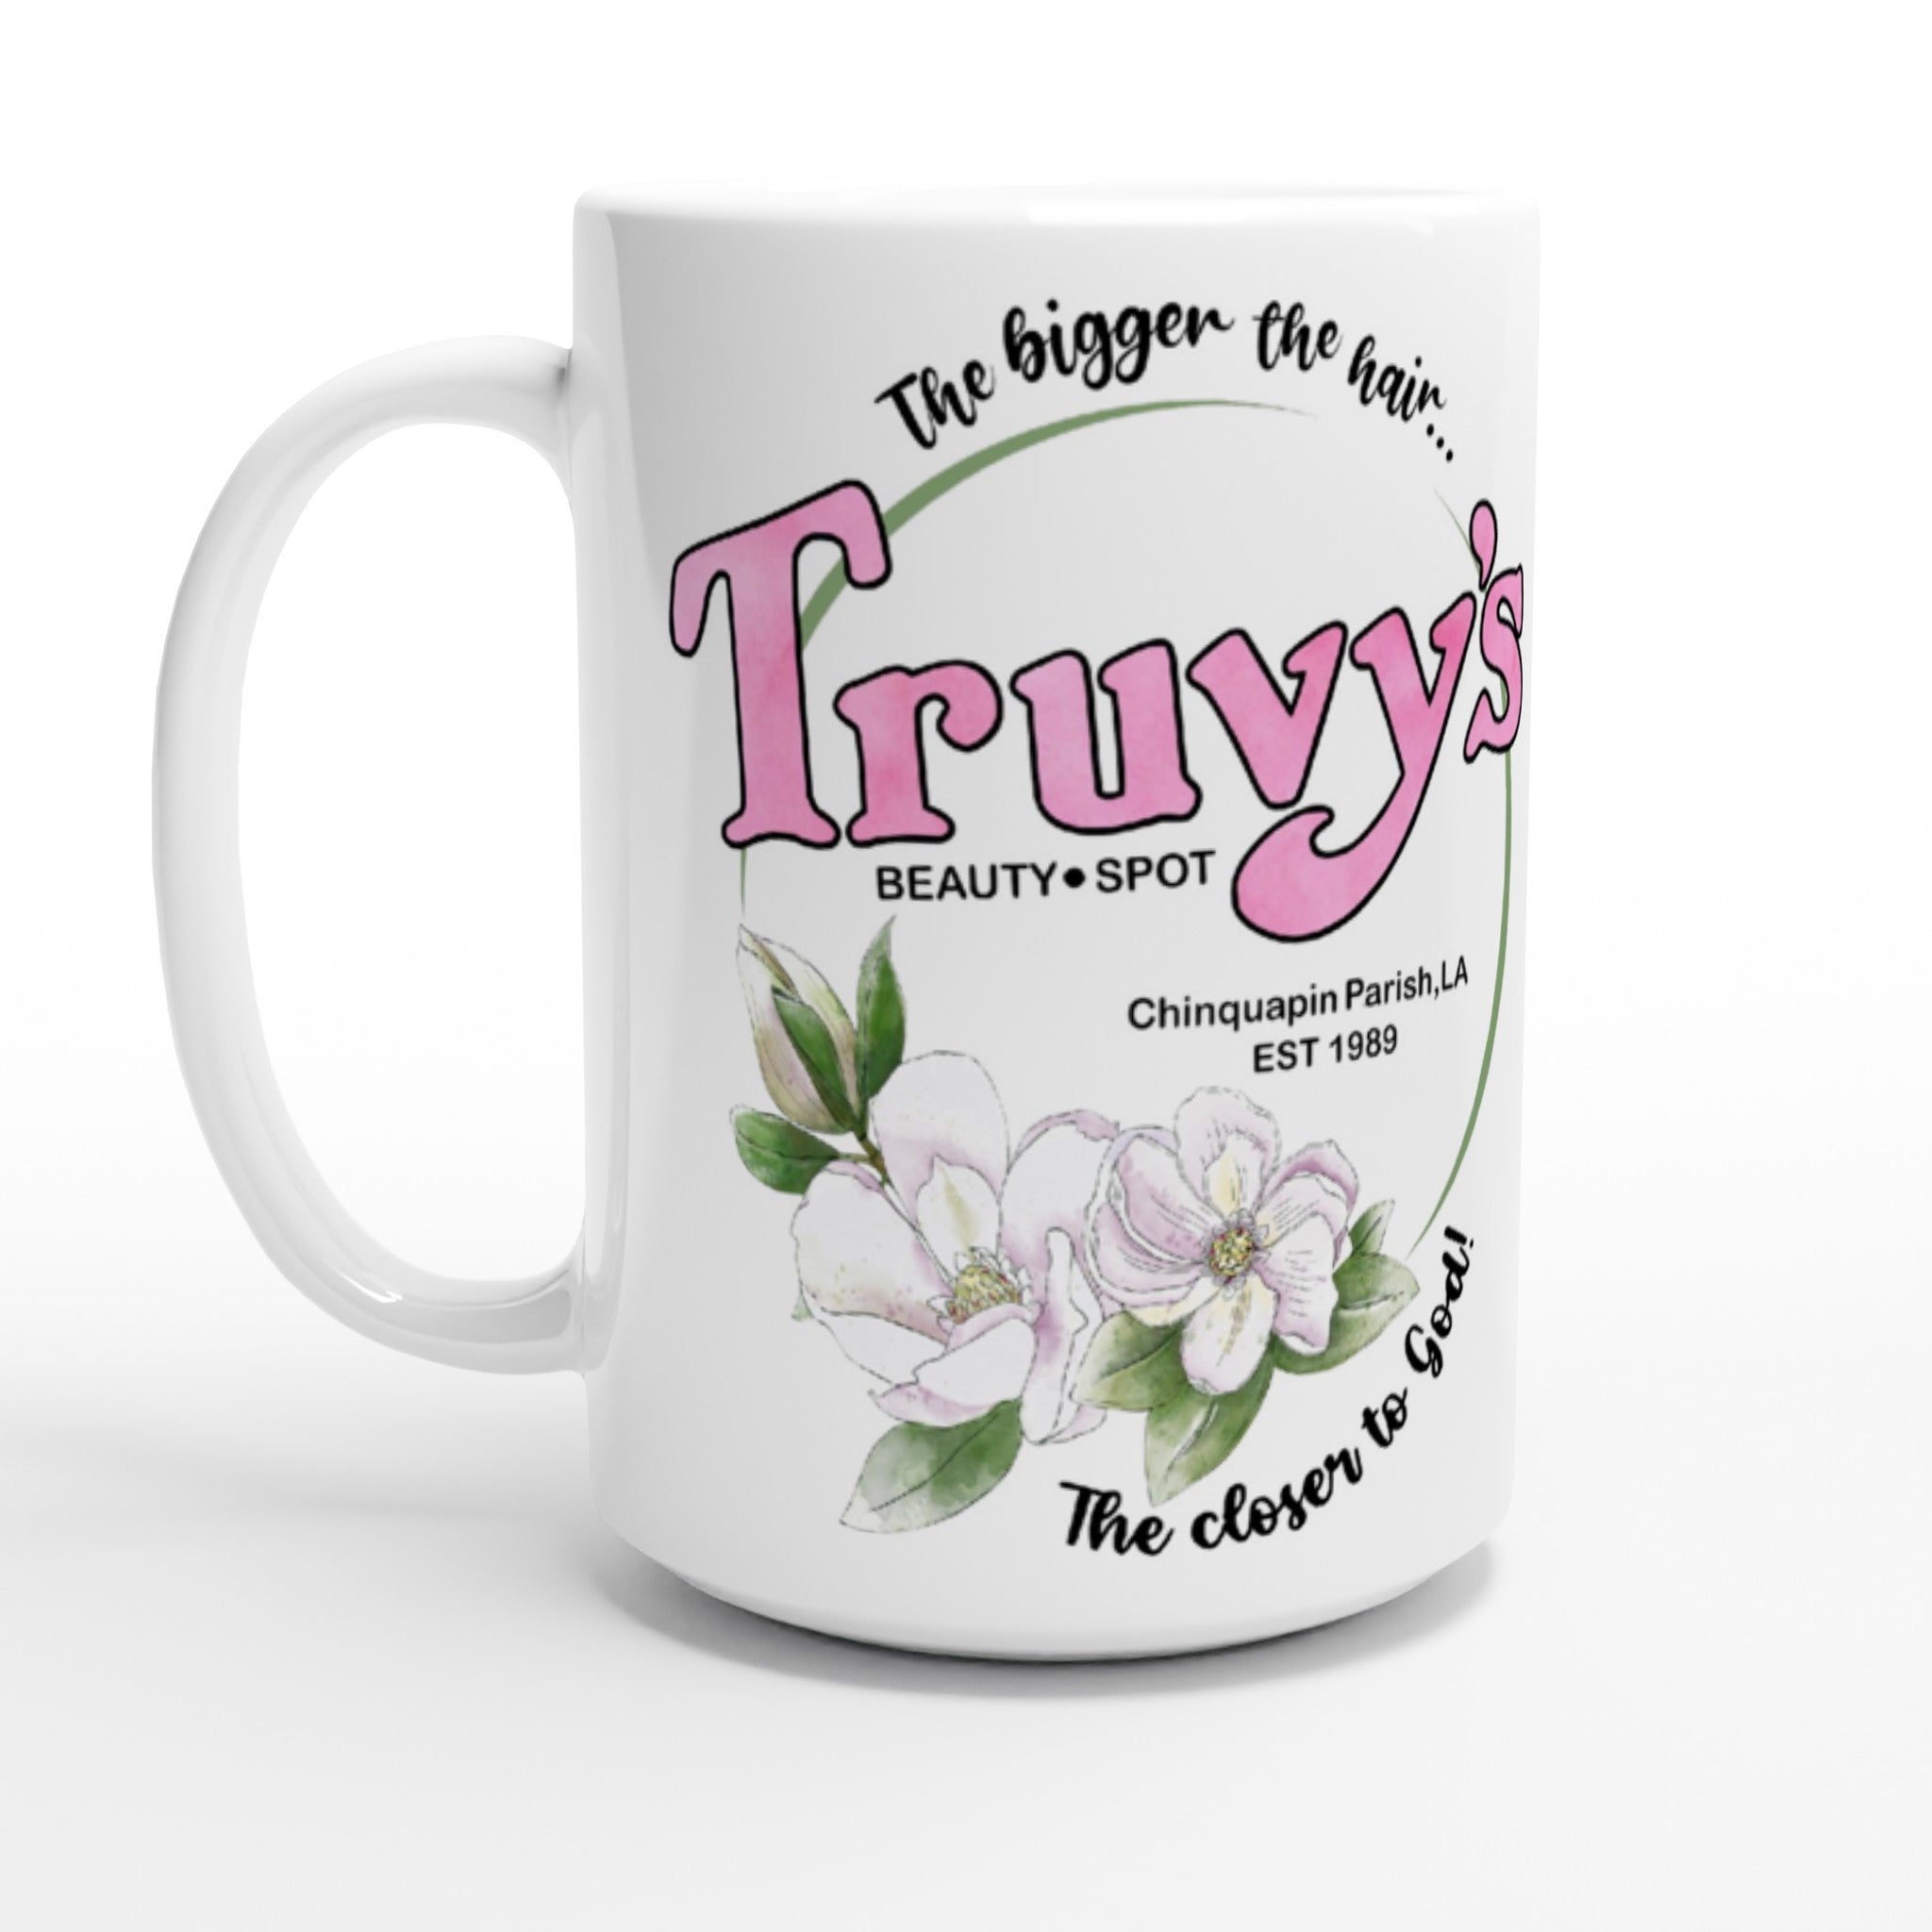 Truvy's 